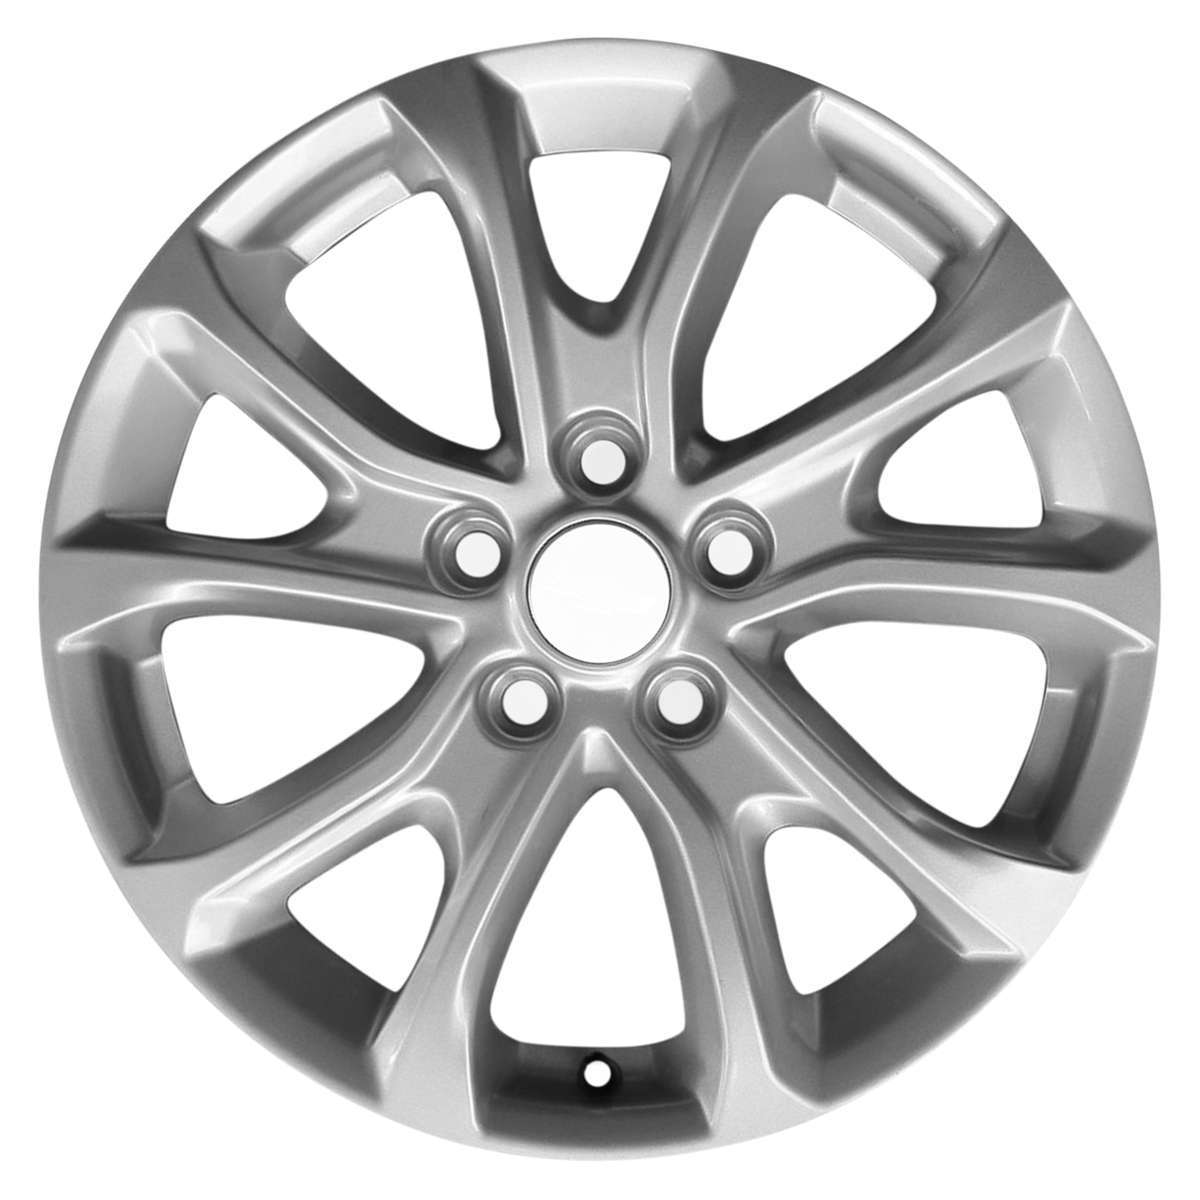 2018 Chevrolet Cruze New 17" Replacement Wheel Rim RW5829S